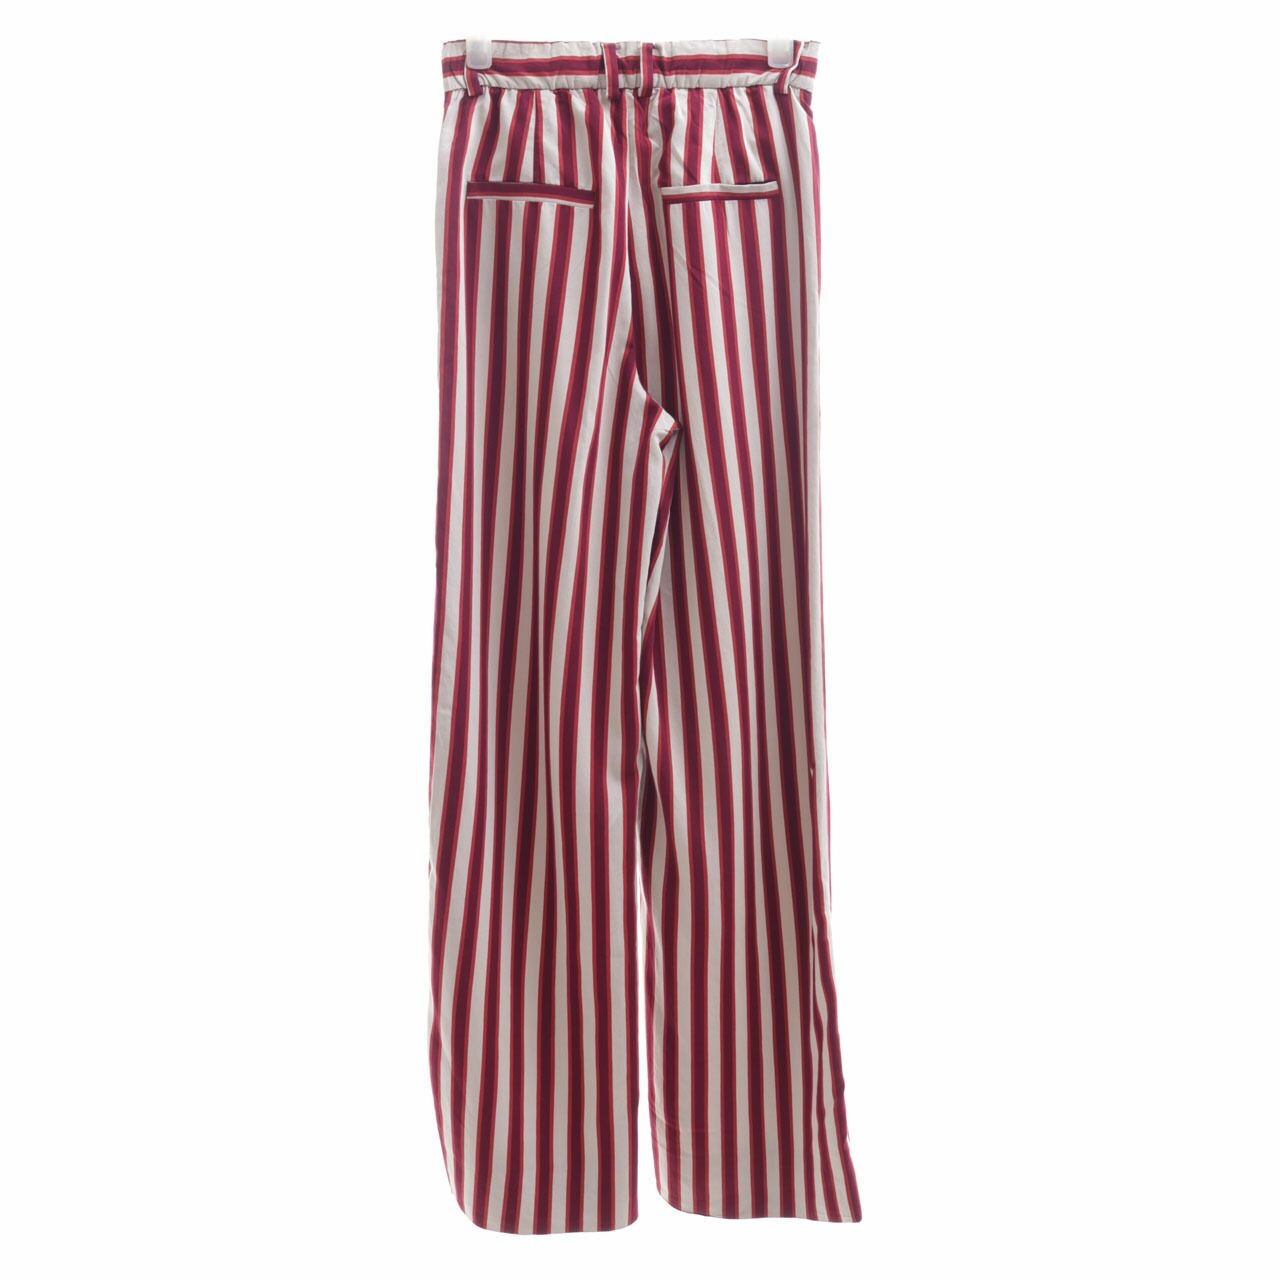 Zara Multicolor Striped Trousers